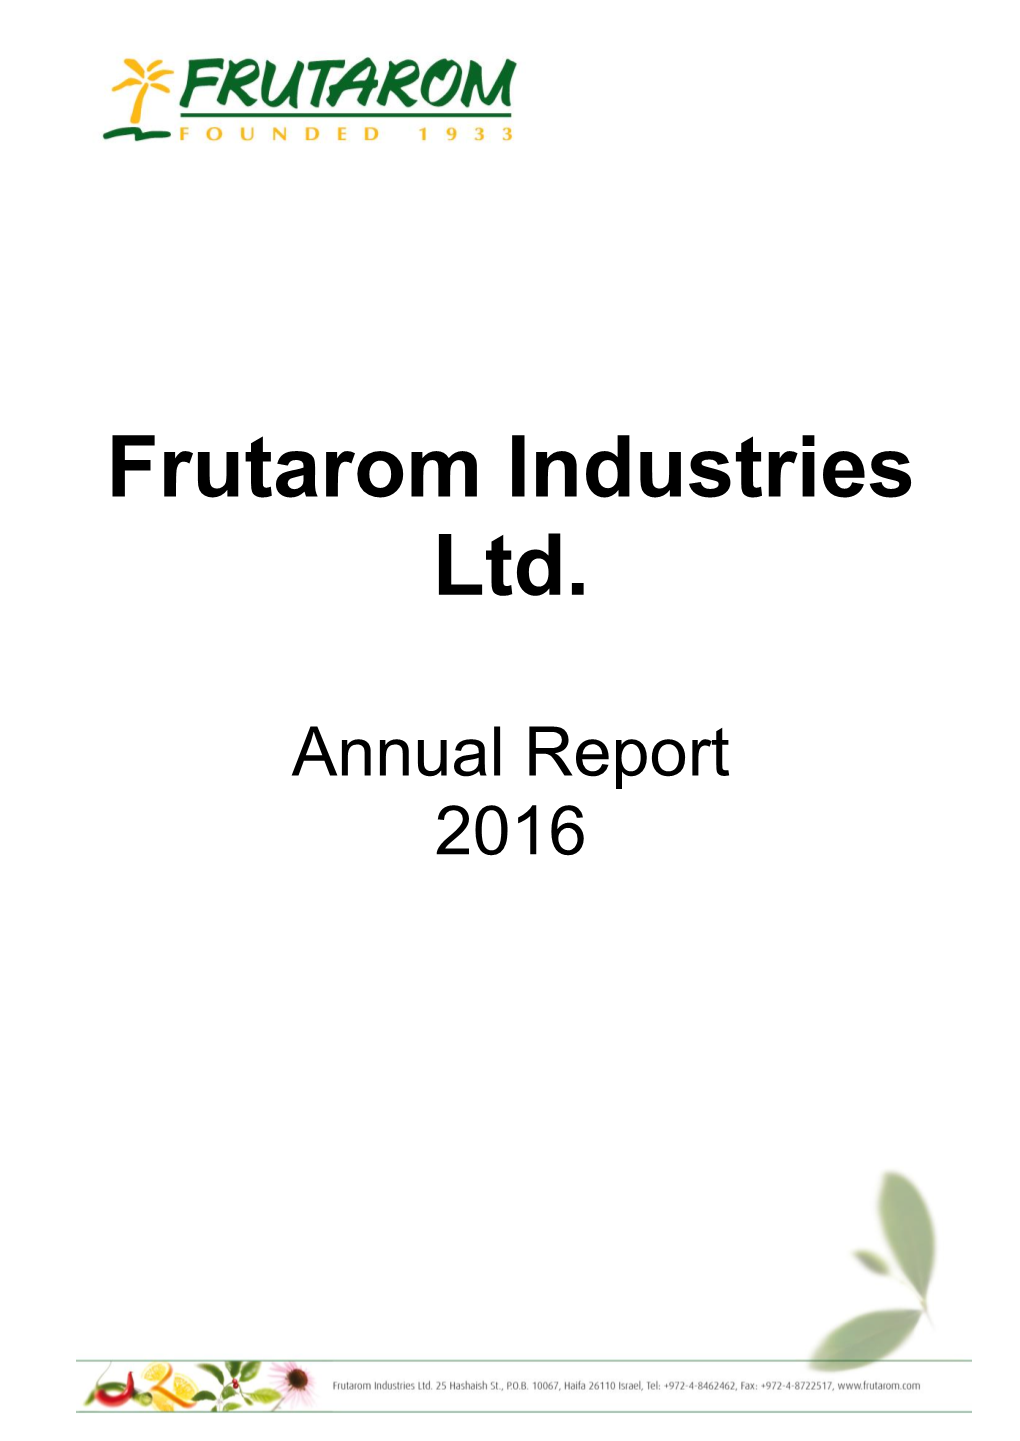 Frutarom Industries Ltd